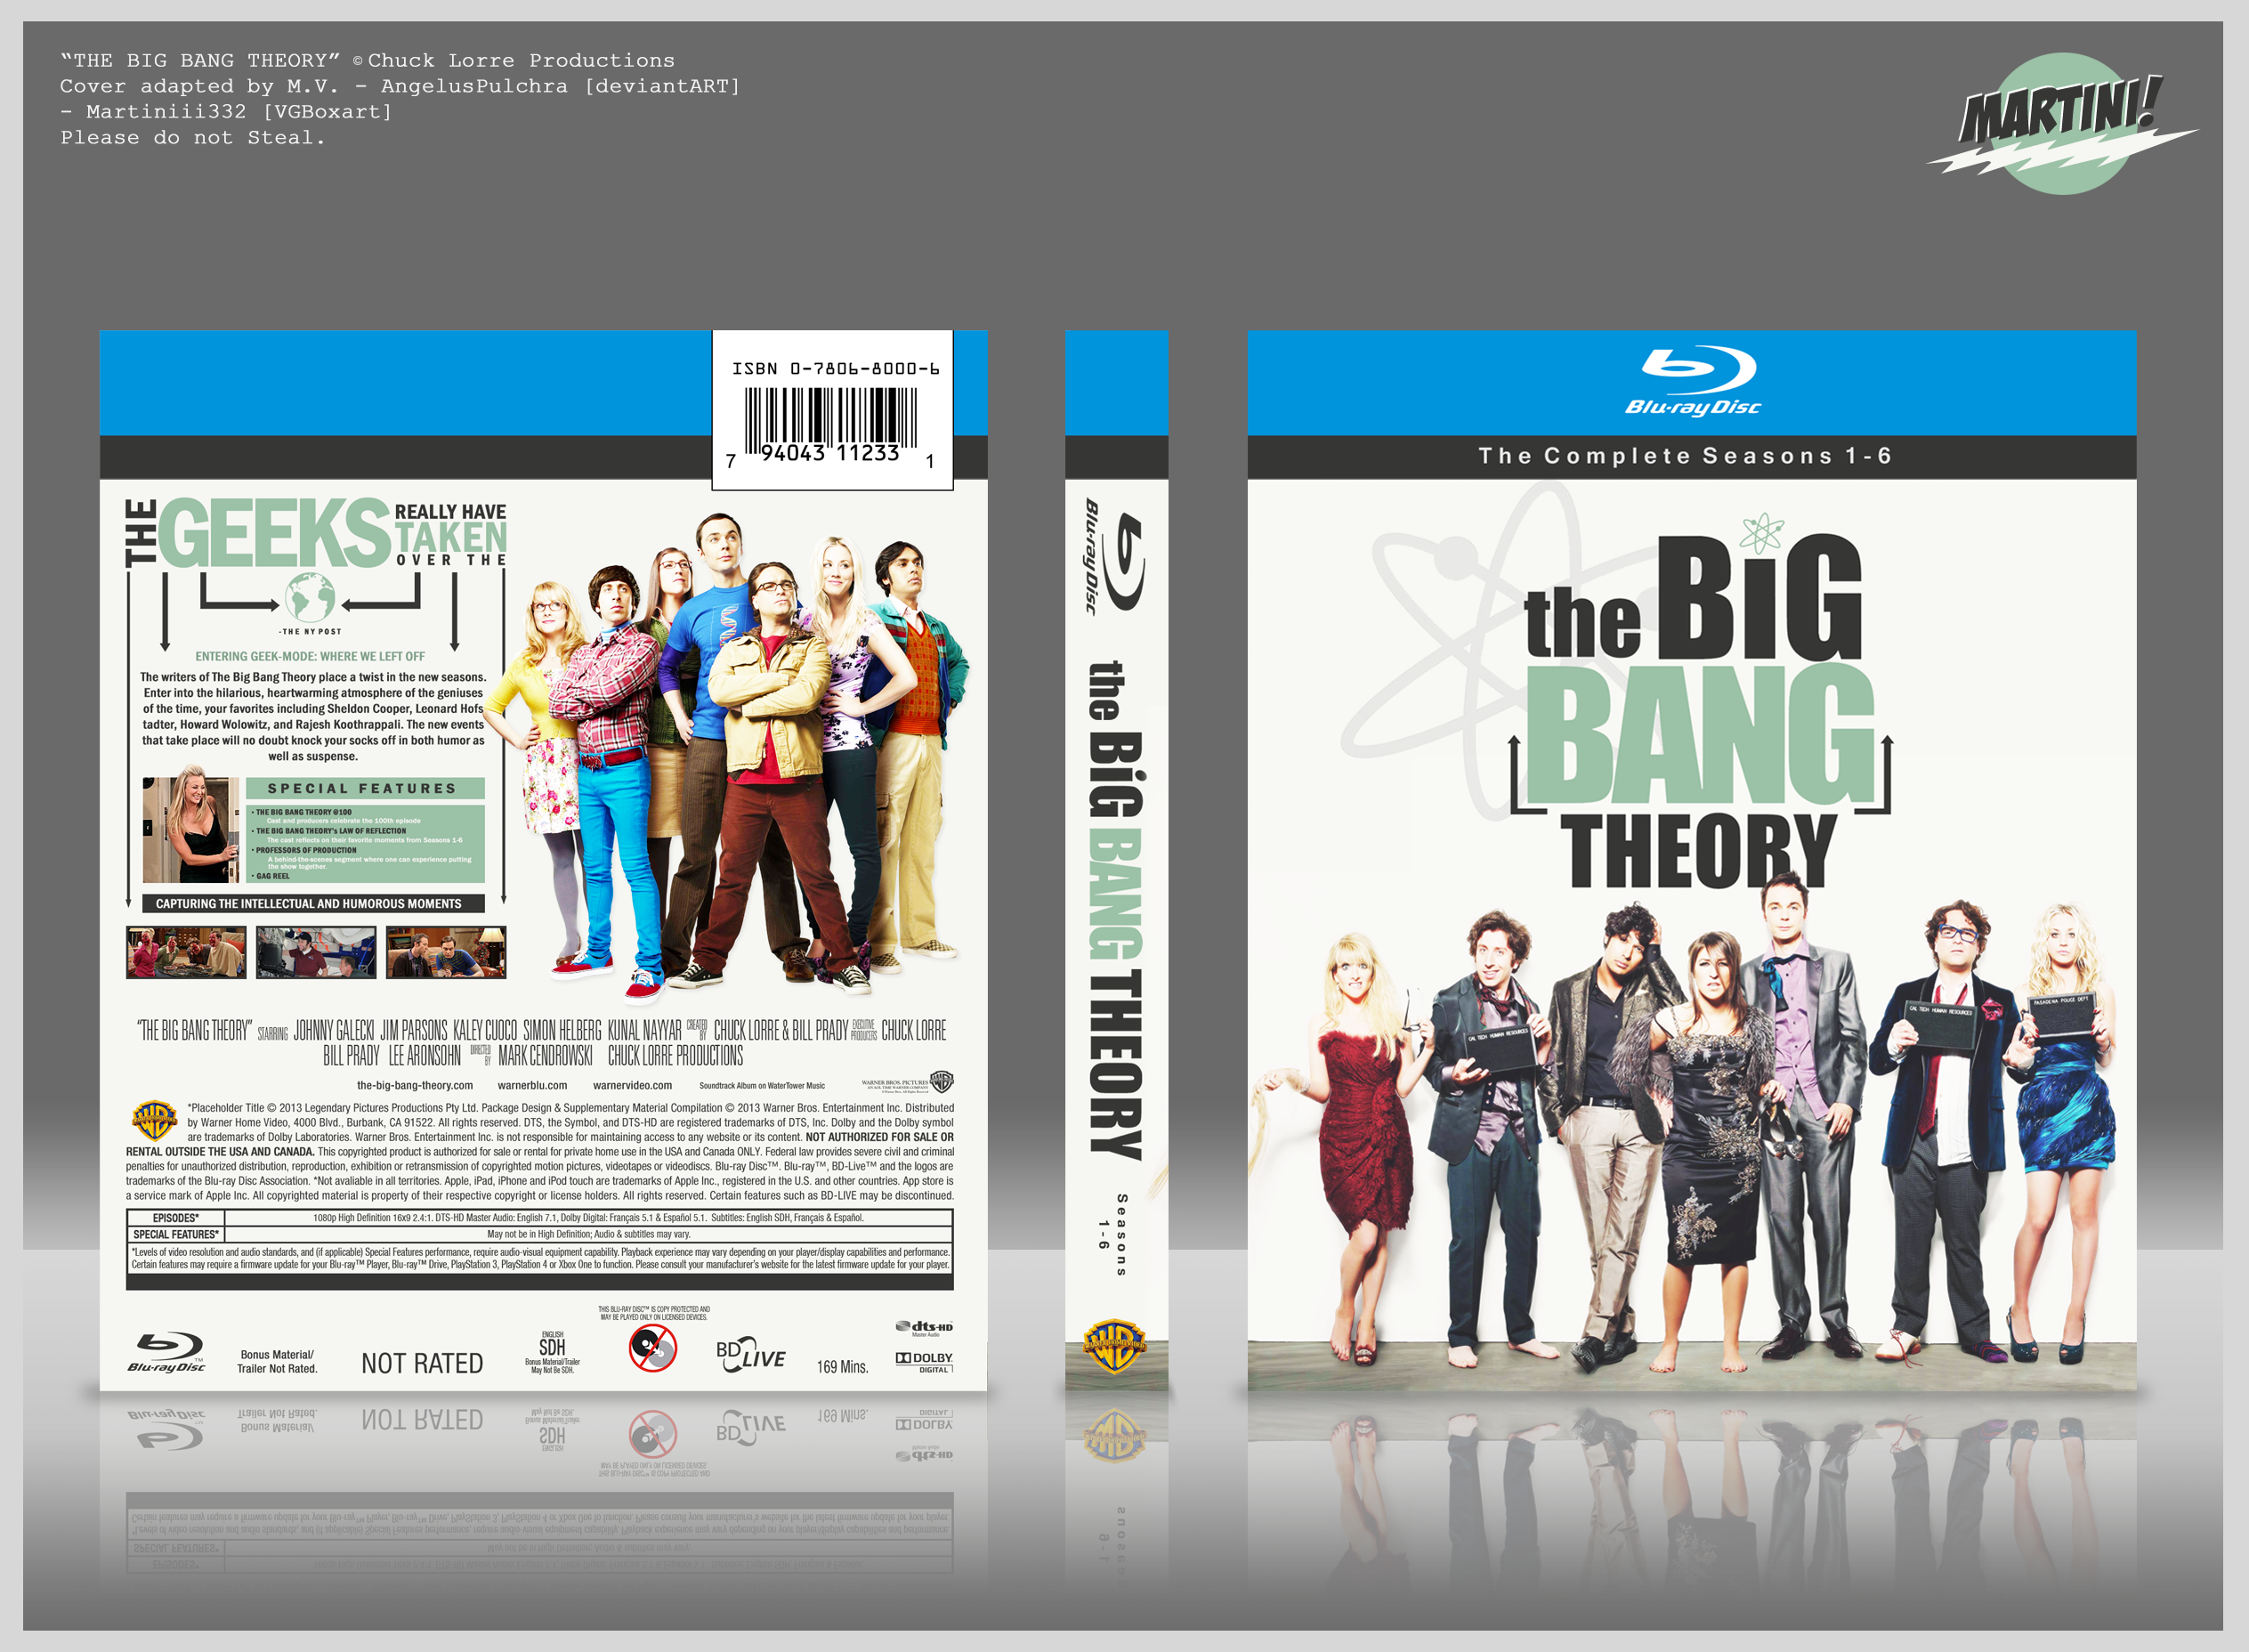 The Big Bang Theory - Seasons 1-6 box cover